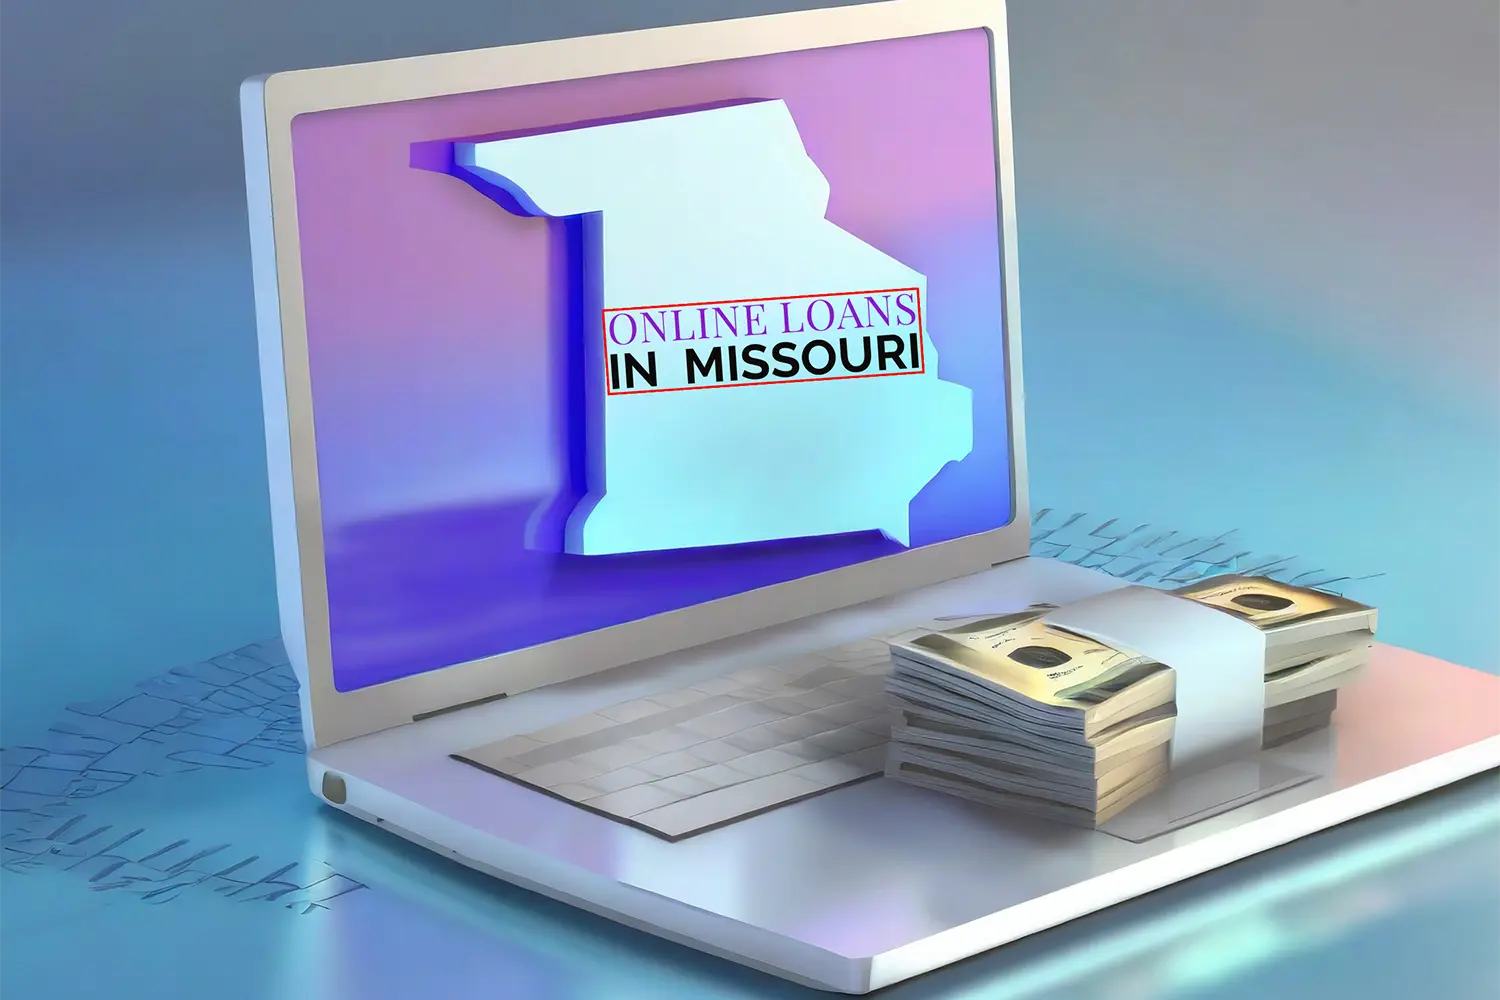 Finding Reputable Online Lenders in Missouri